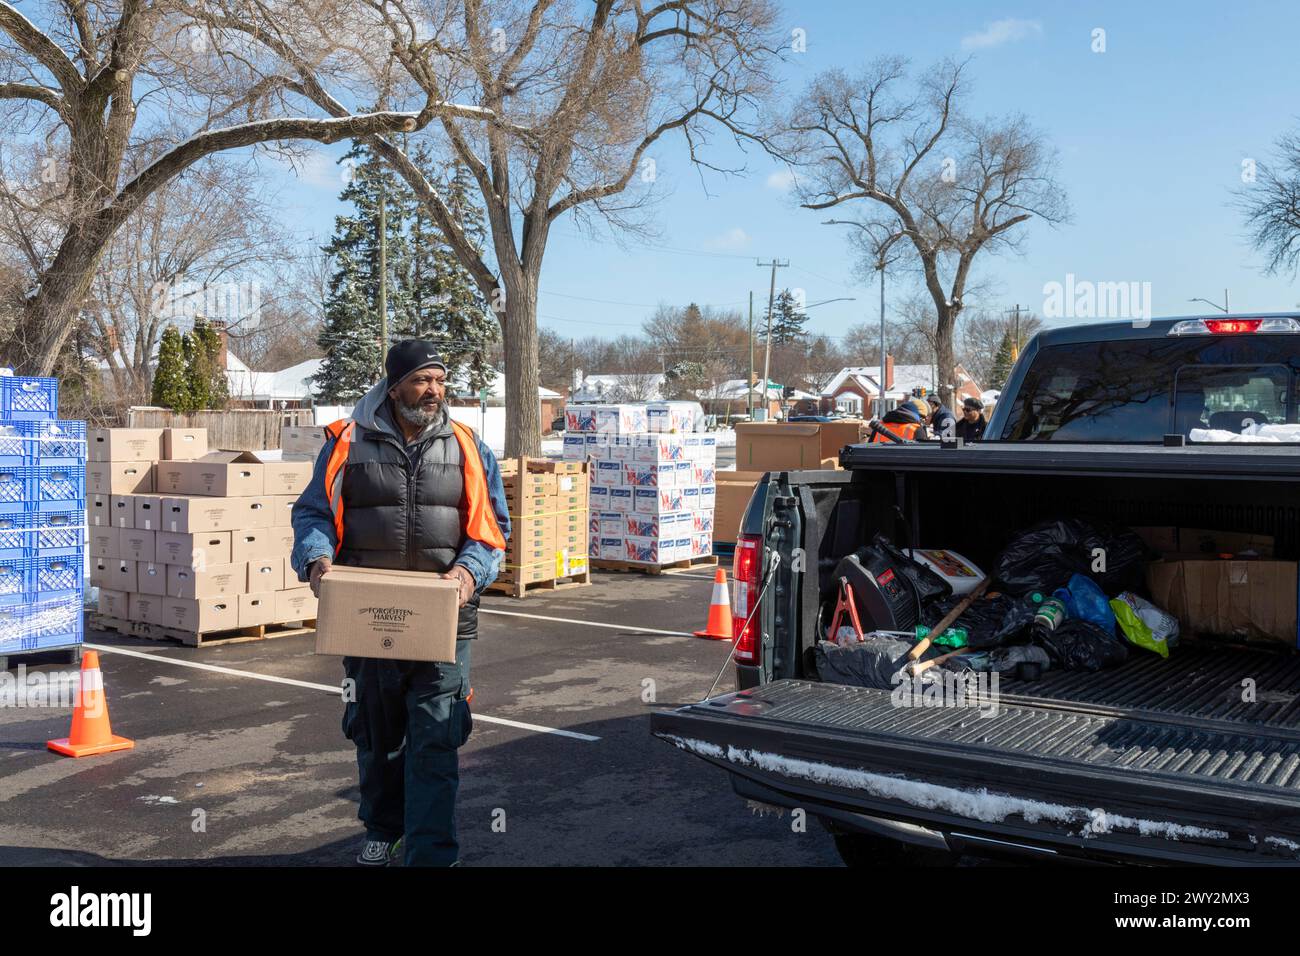 Detroit, Michigan - de la nourriture gratuite est distribuée aux personnes qui assistent à une foire communautaire sur la santé. Banque D'Images